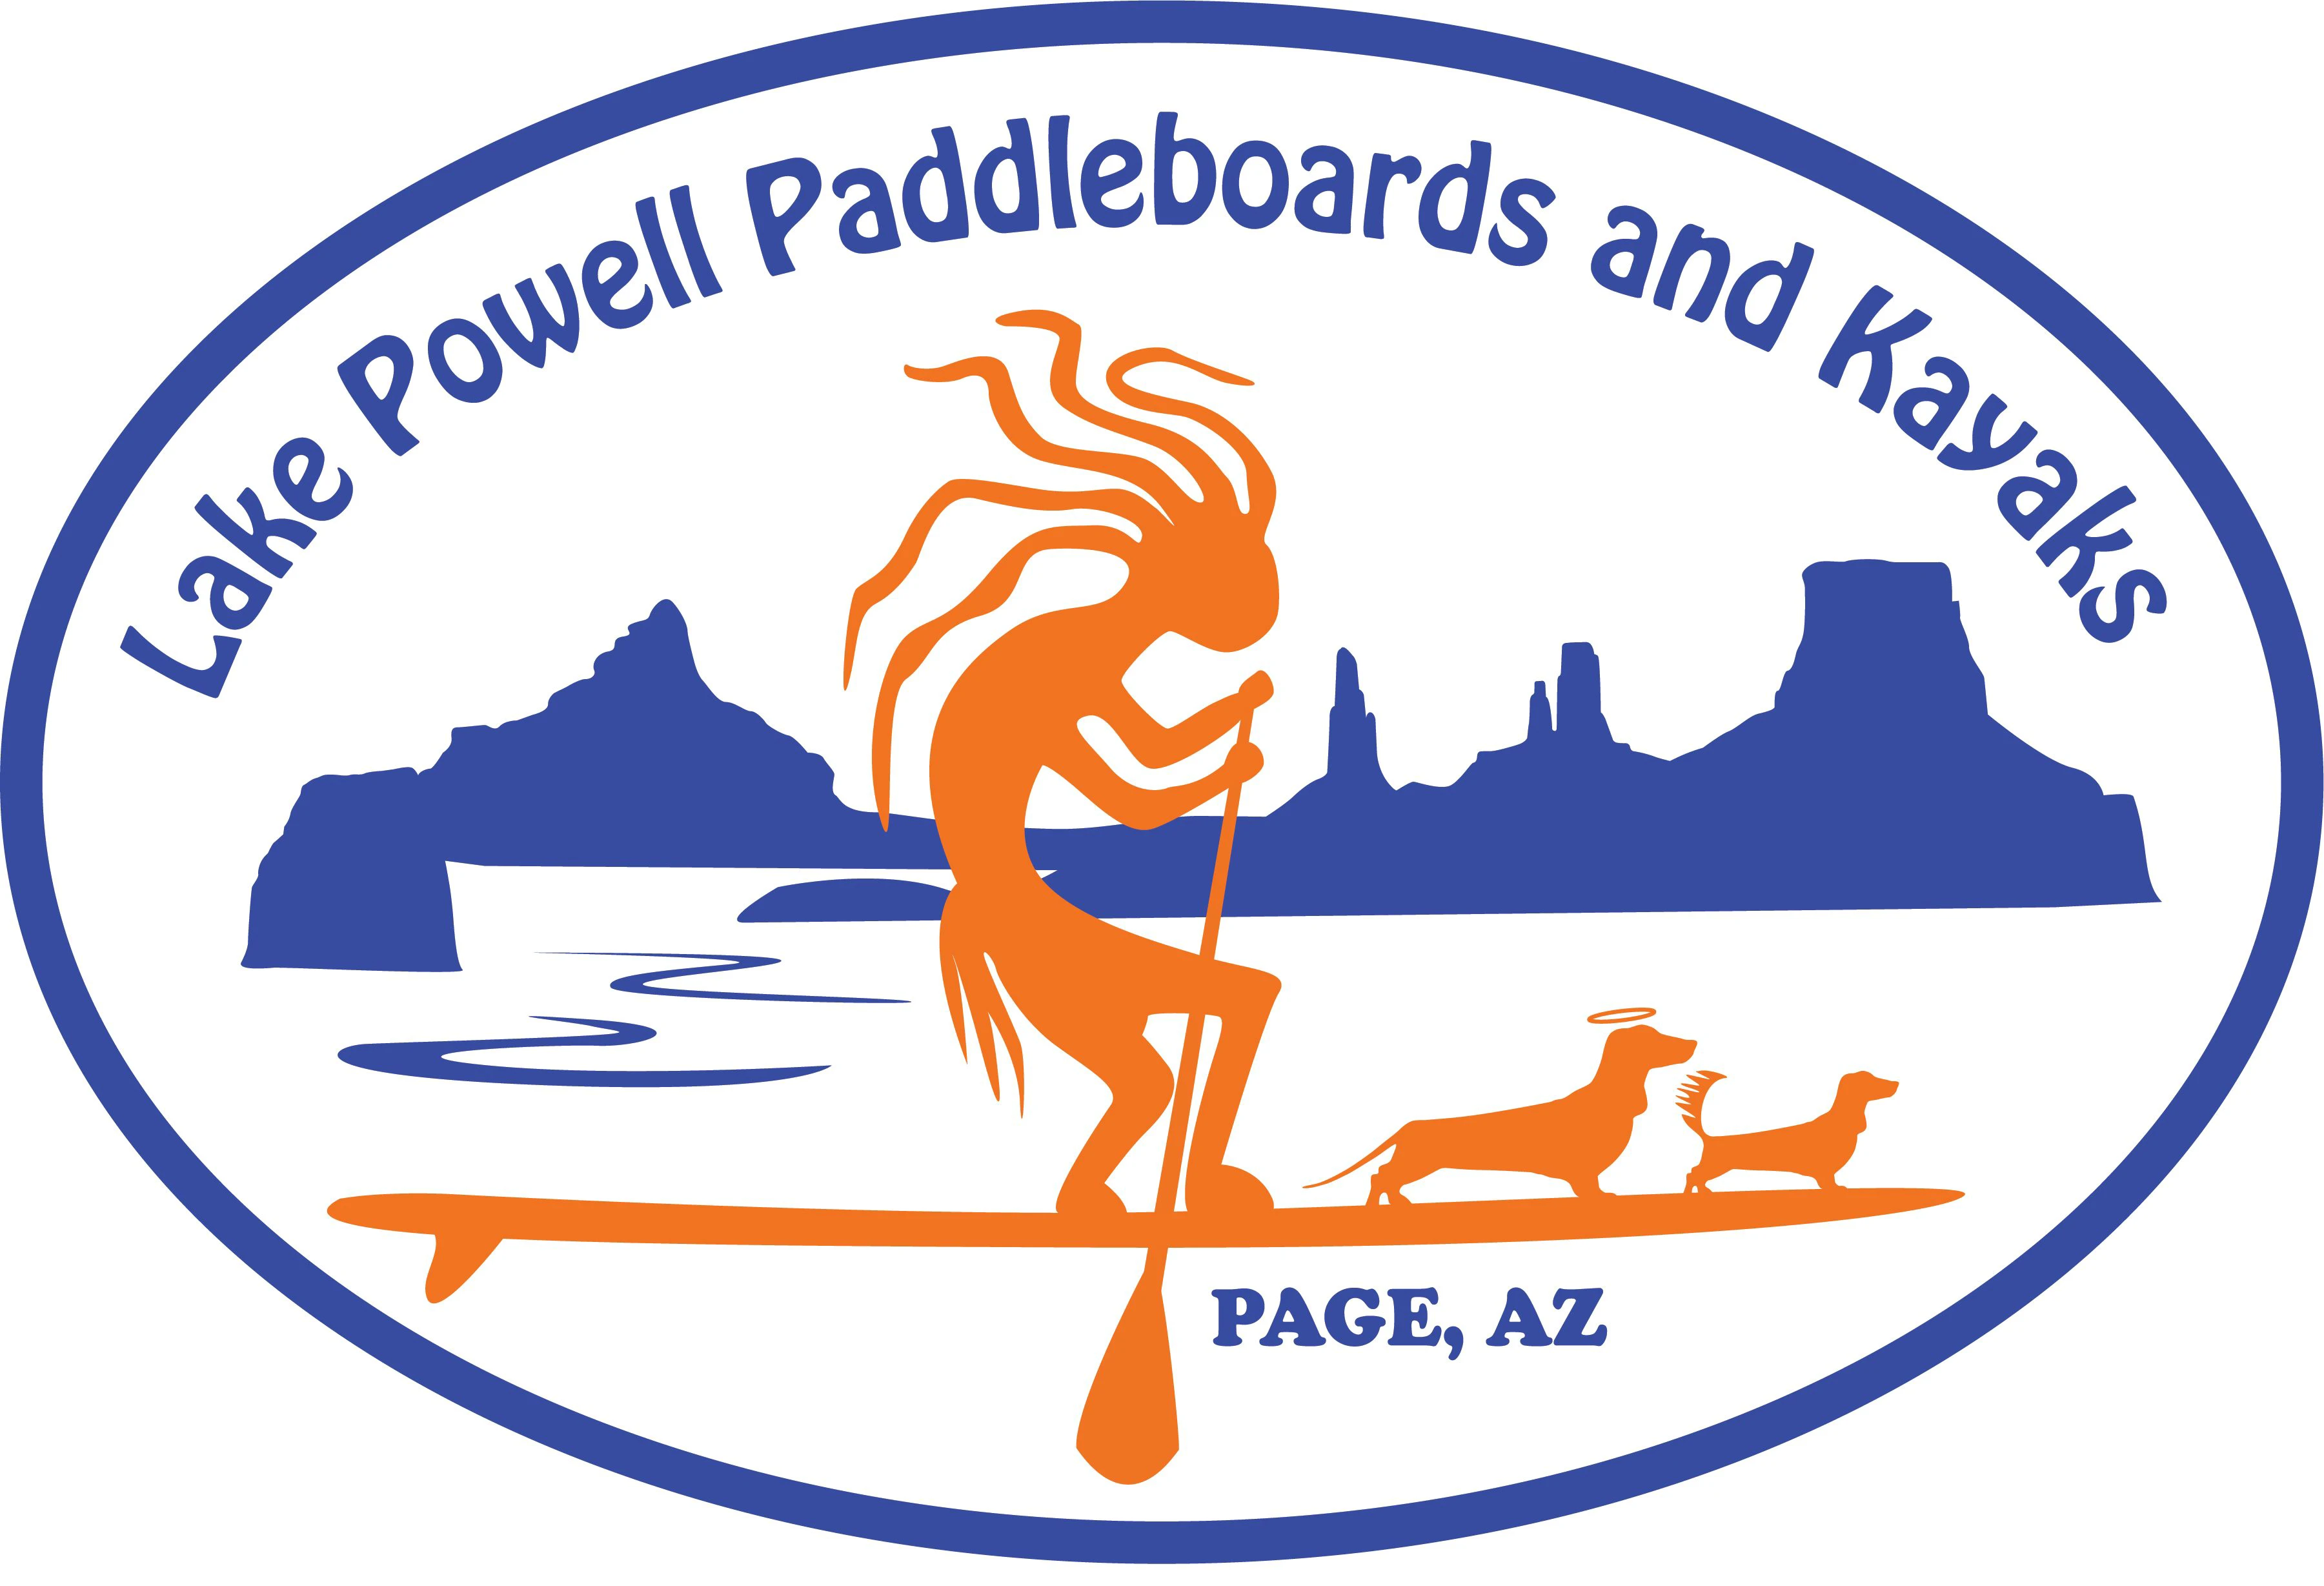 lakepowellpaddleboards.com